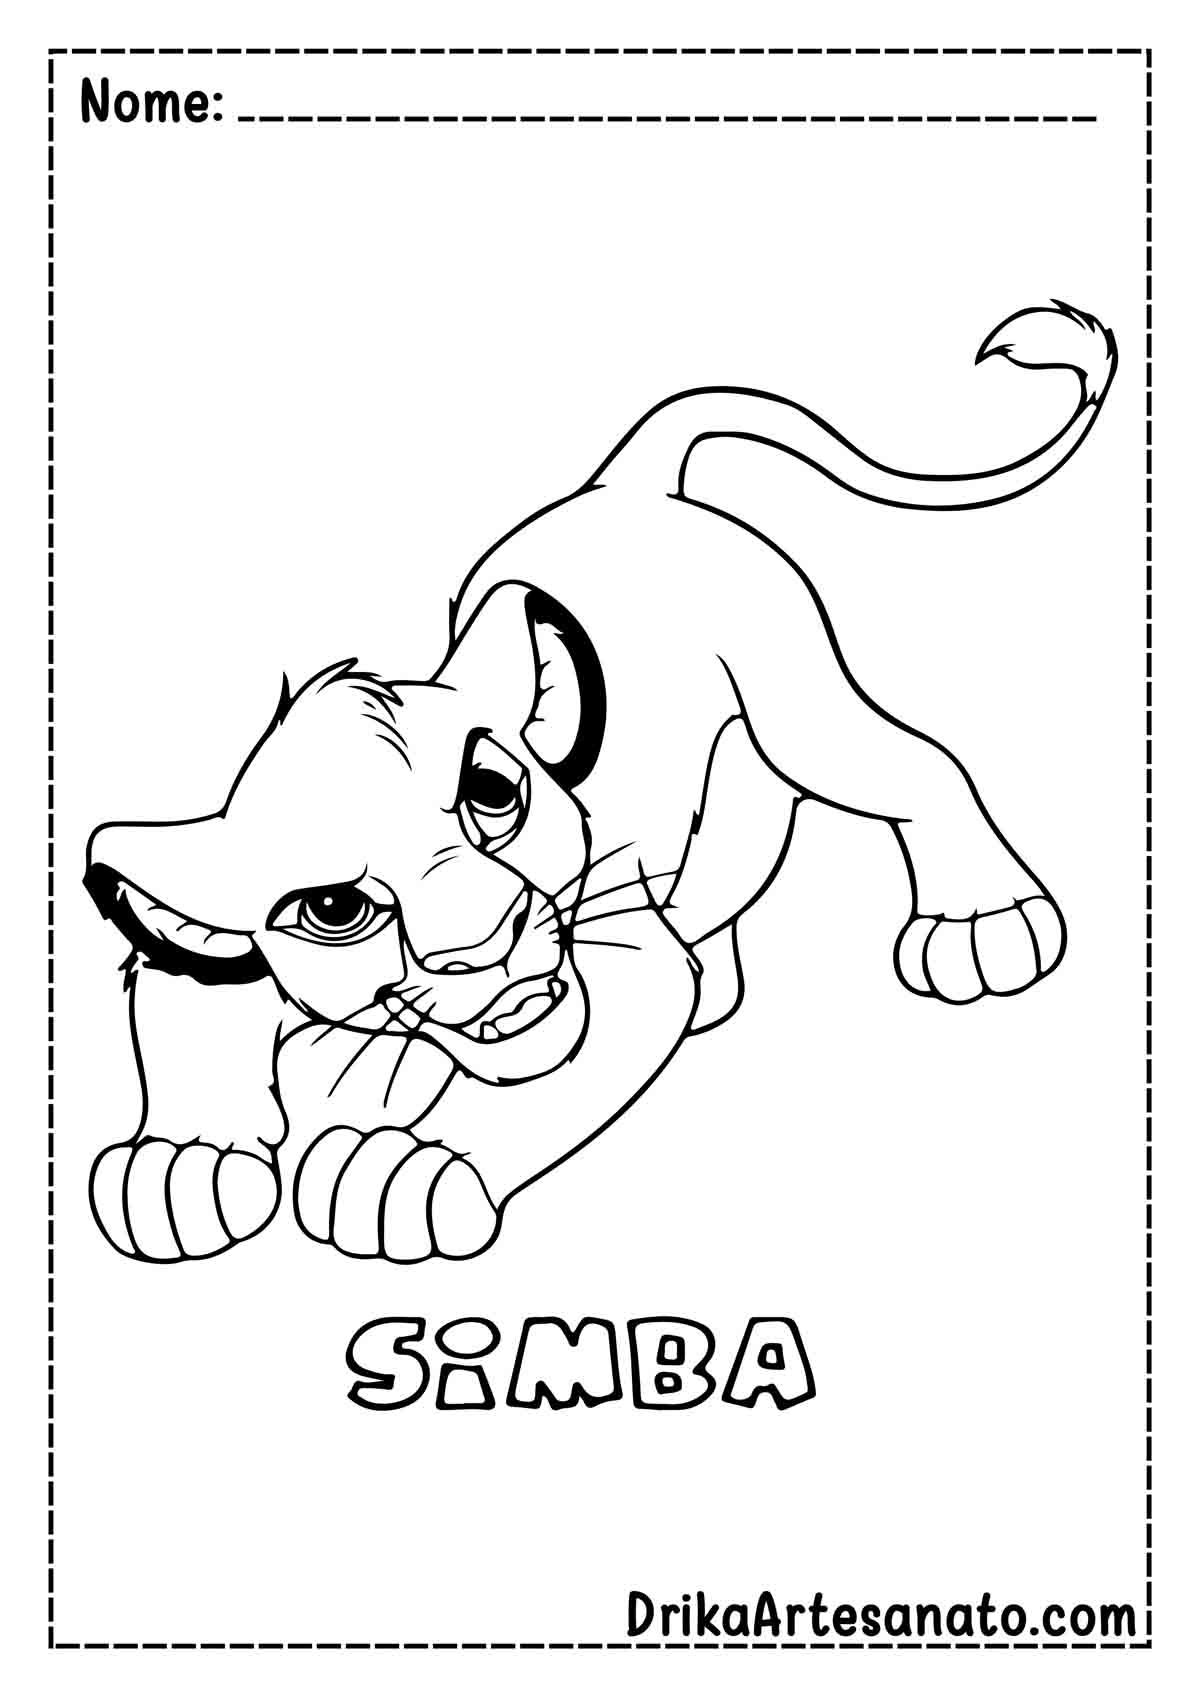 Desenho do Rei Leão para Imprimir e Colorir